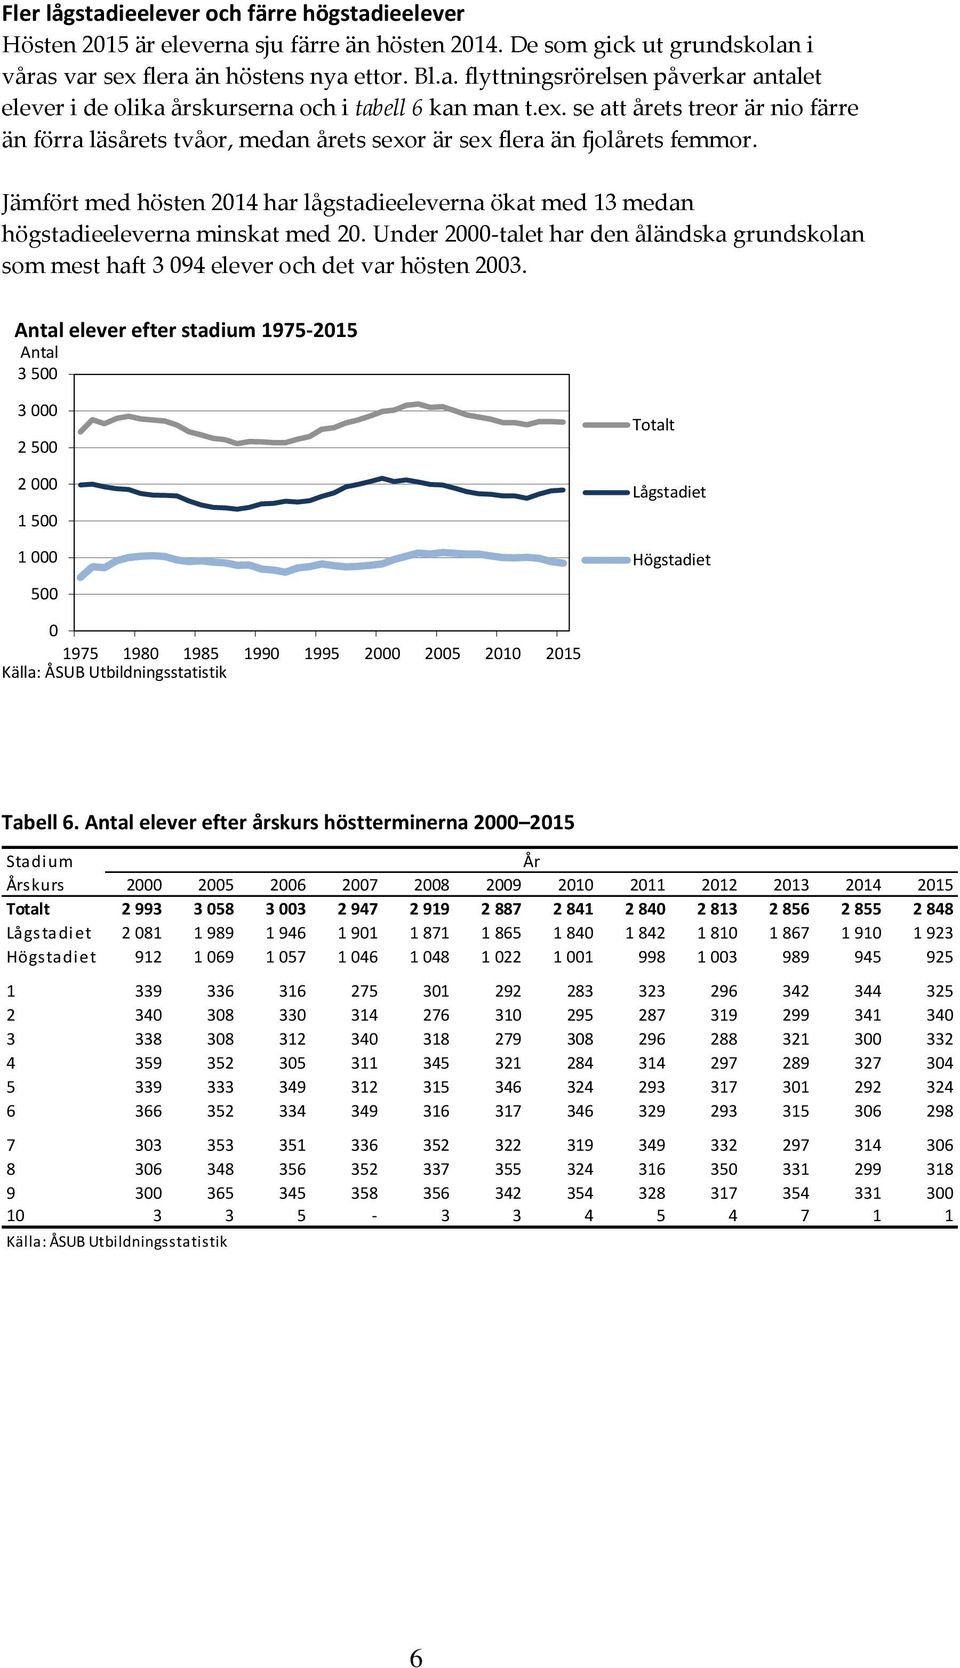 Jämfört med hösten 2014 har lågstadieeleverna ökat med 13 medan högstadieeleverna minskat med 20. Under 2000-talet har den åländska grundskolan som mest haft 3 094 elever och det var hösten 2003.